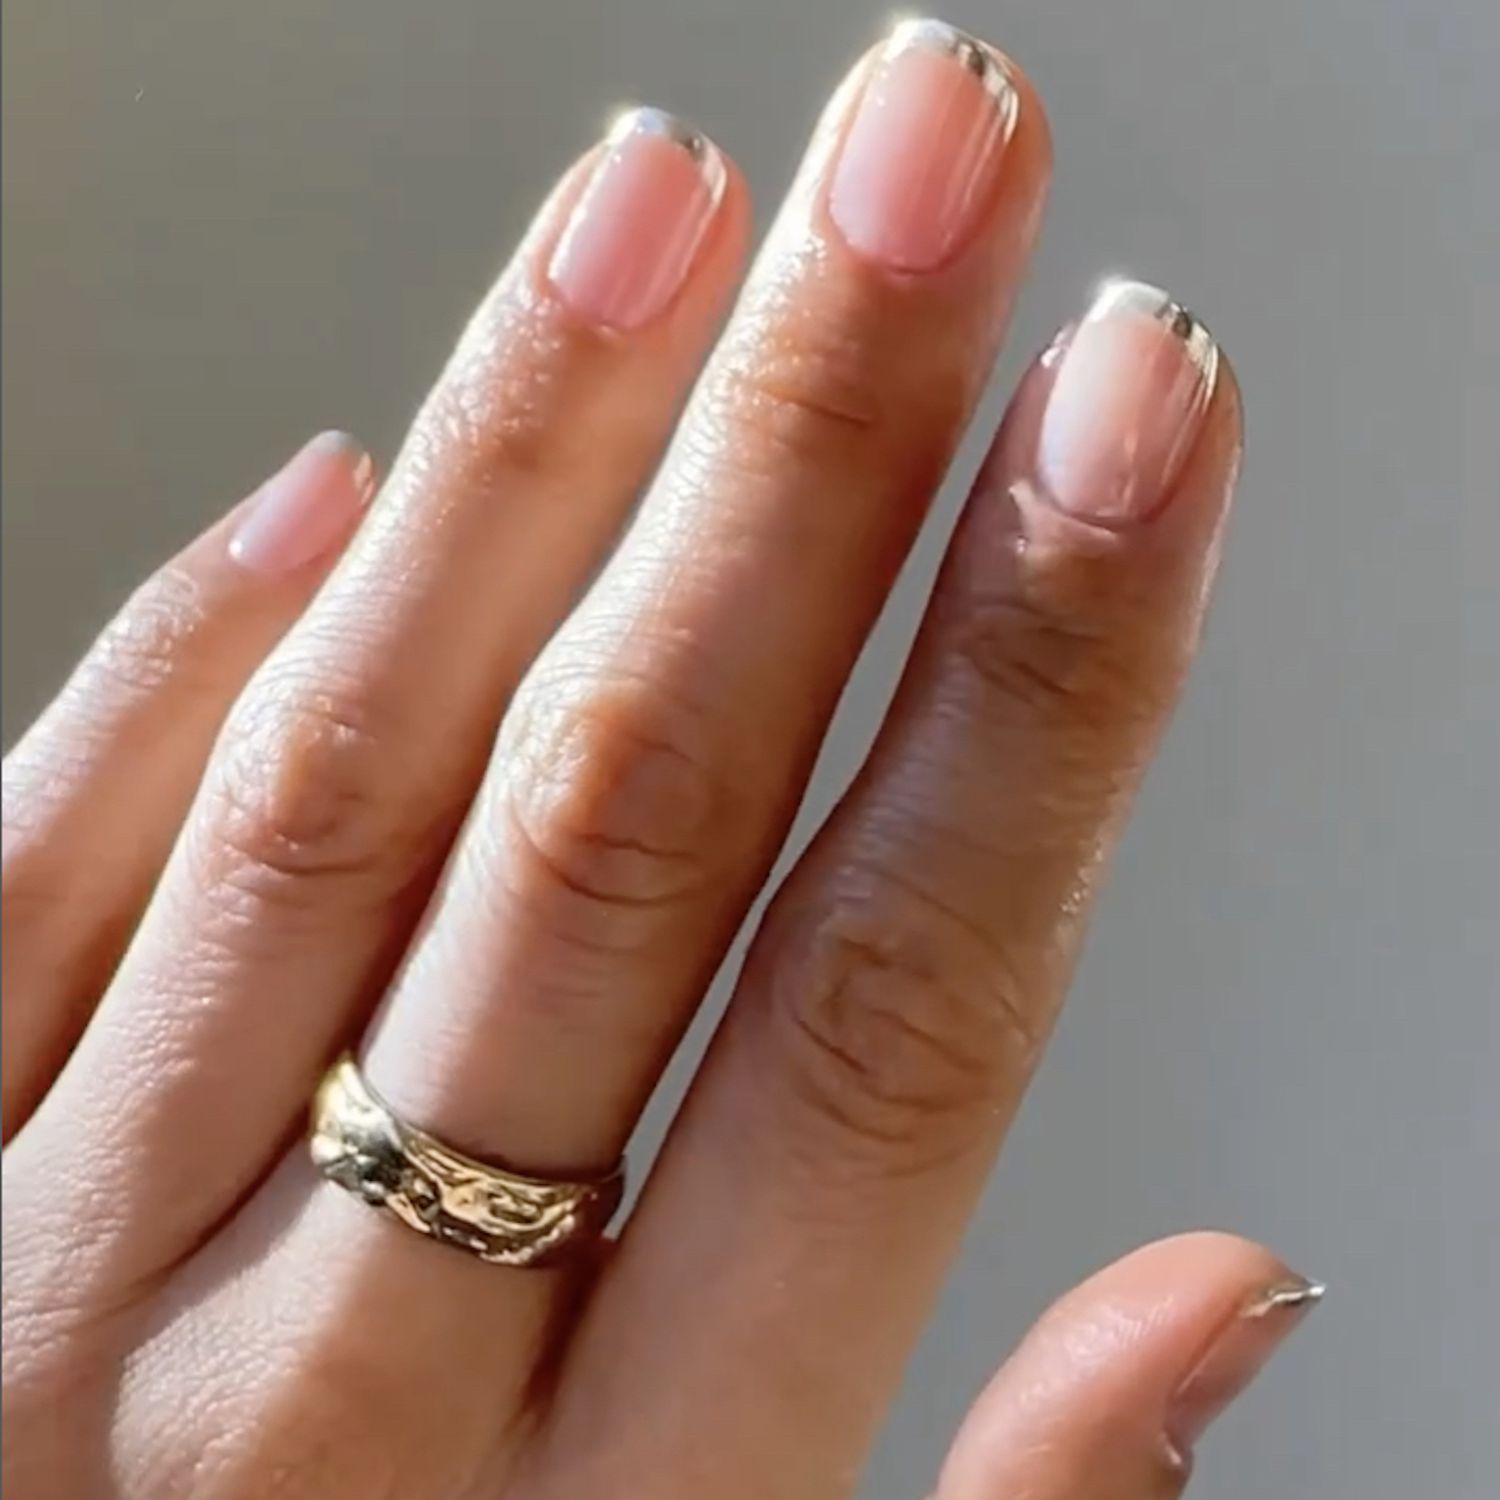 Plano próximo de uma manicure francesa cromo prateada com um anel no dedo médio